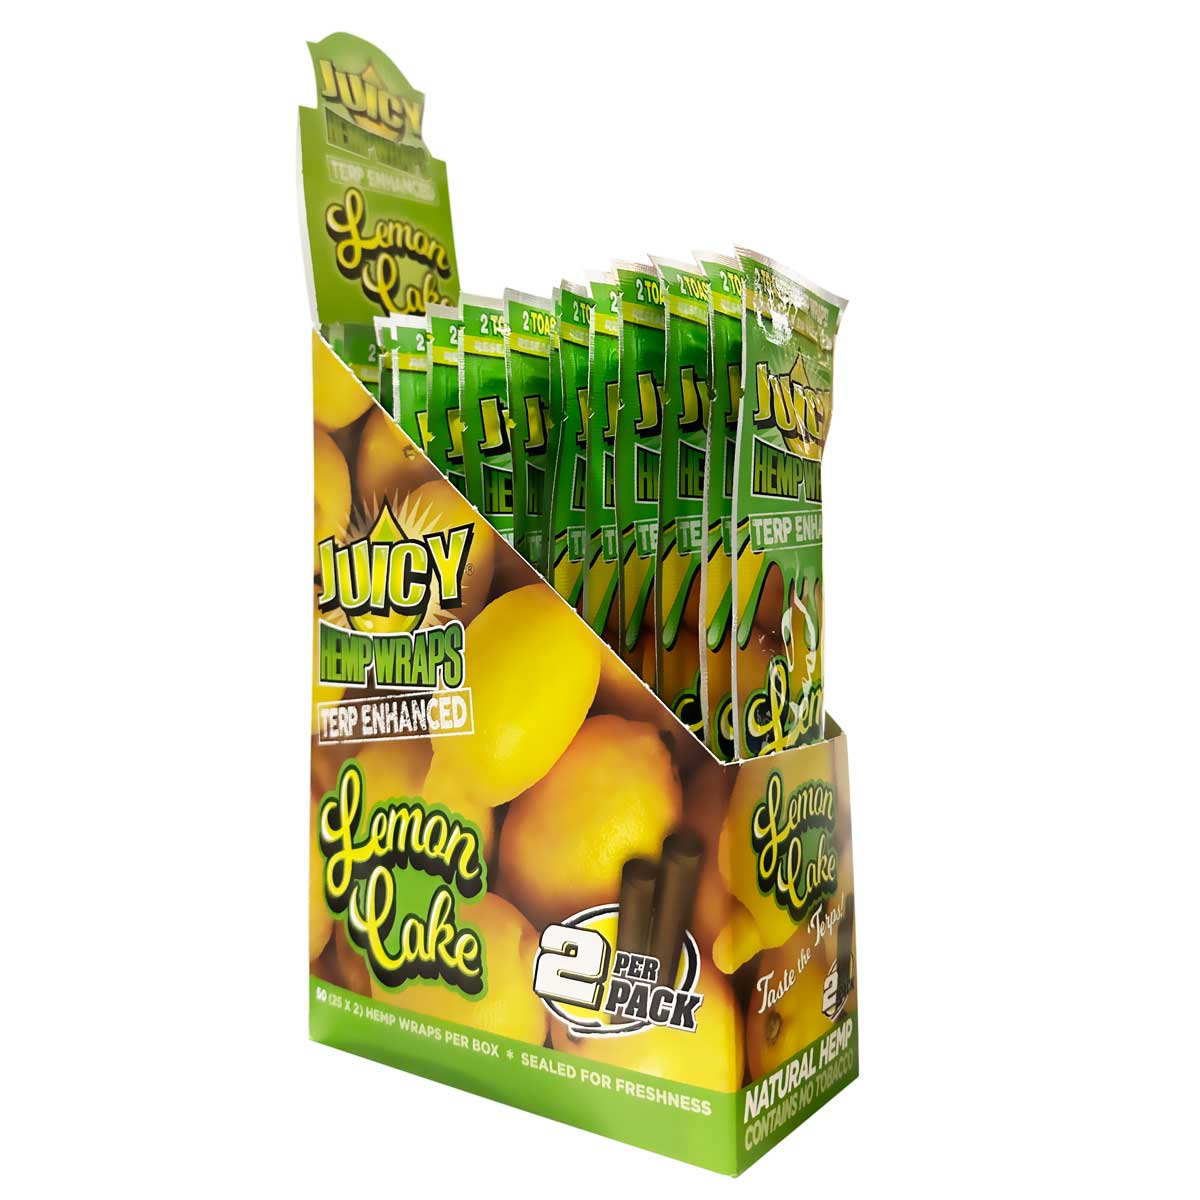 Juicy Jay's, Feuille De Blunt Juicy Jay's Tarte Citron